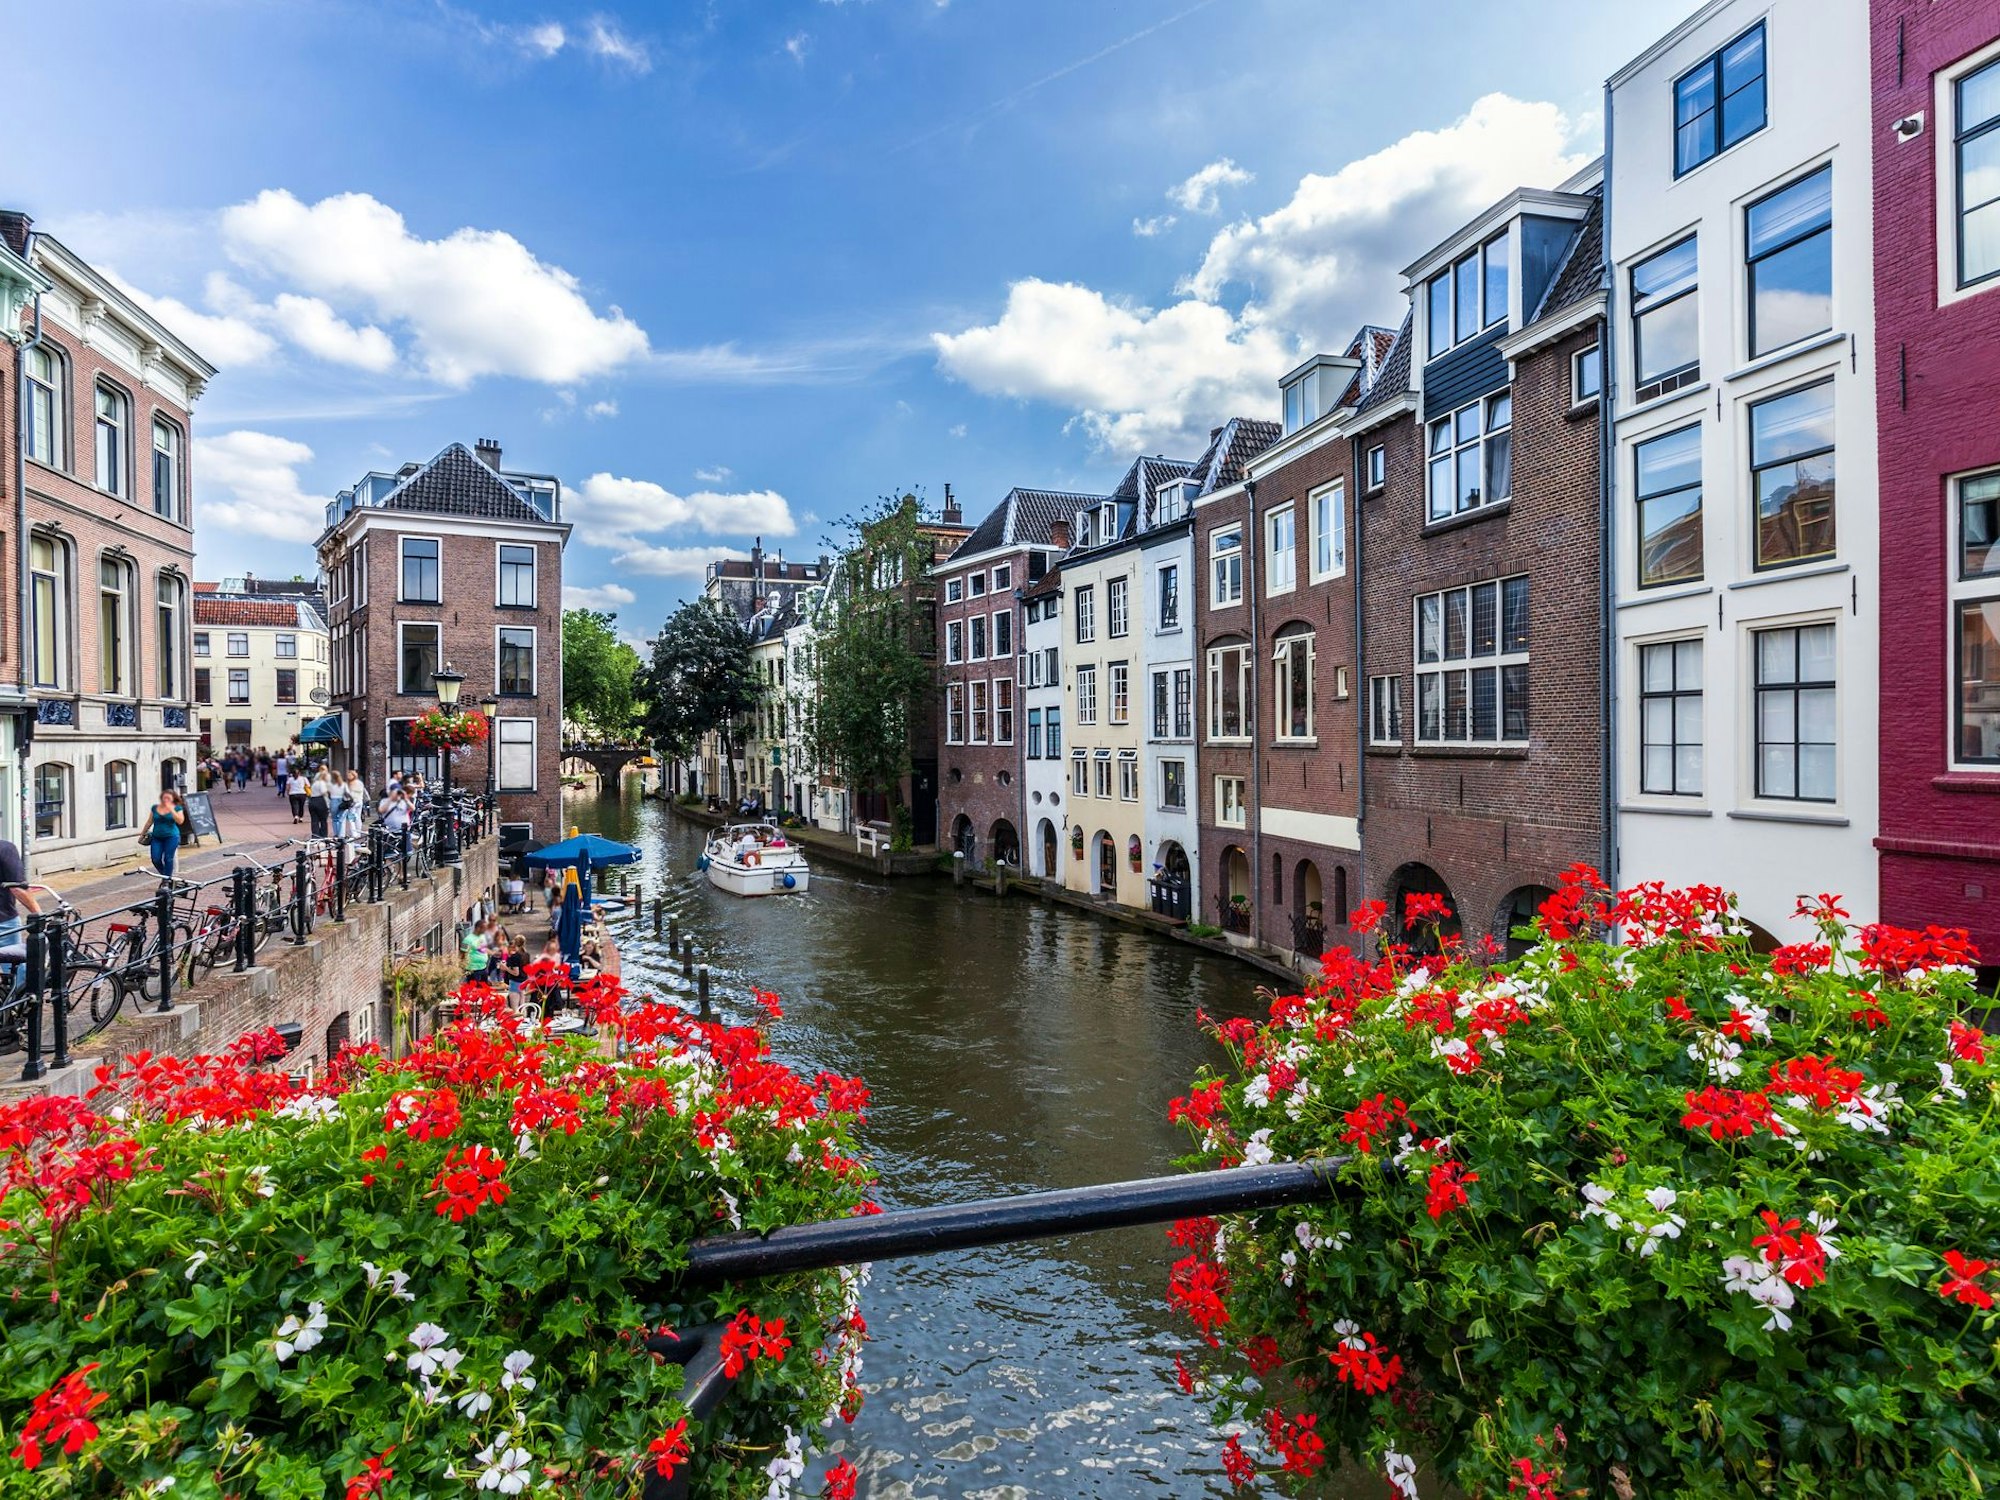 Die Universitätsstadt Utrecht lockt mit ihren malerischen Kanälen jährlich viele Besucher an.